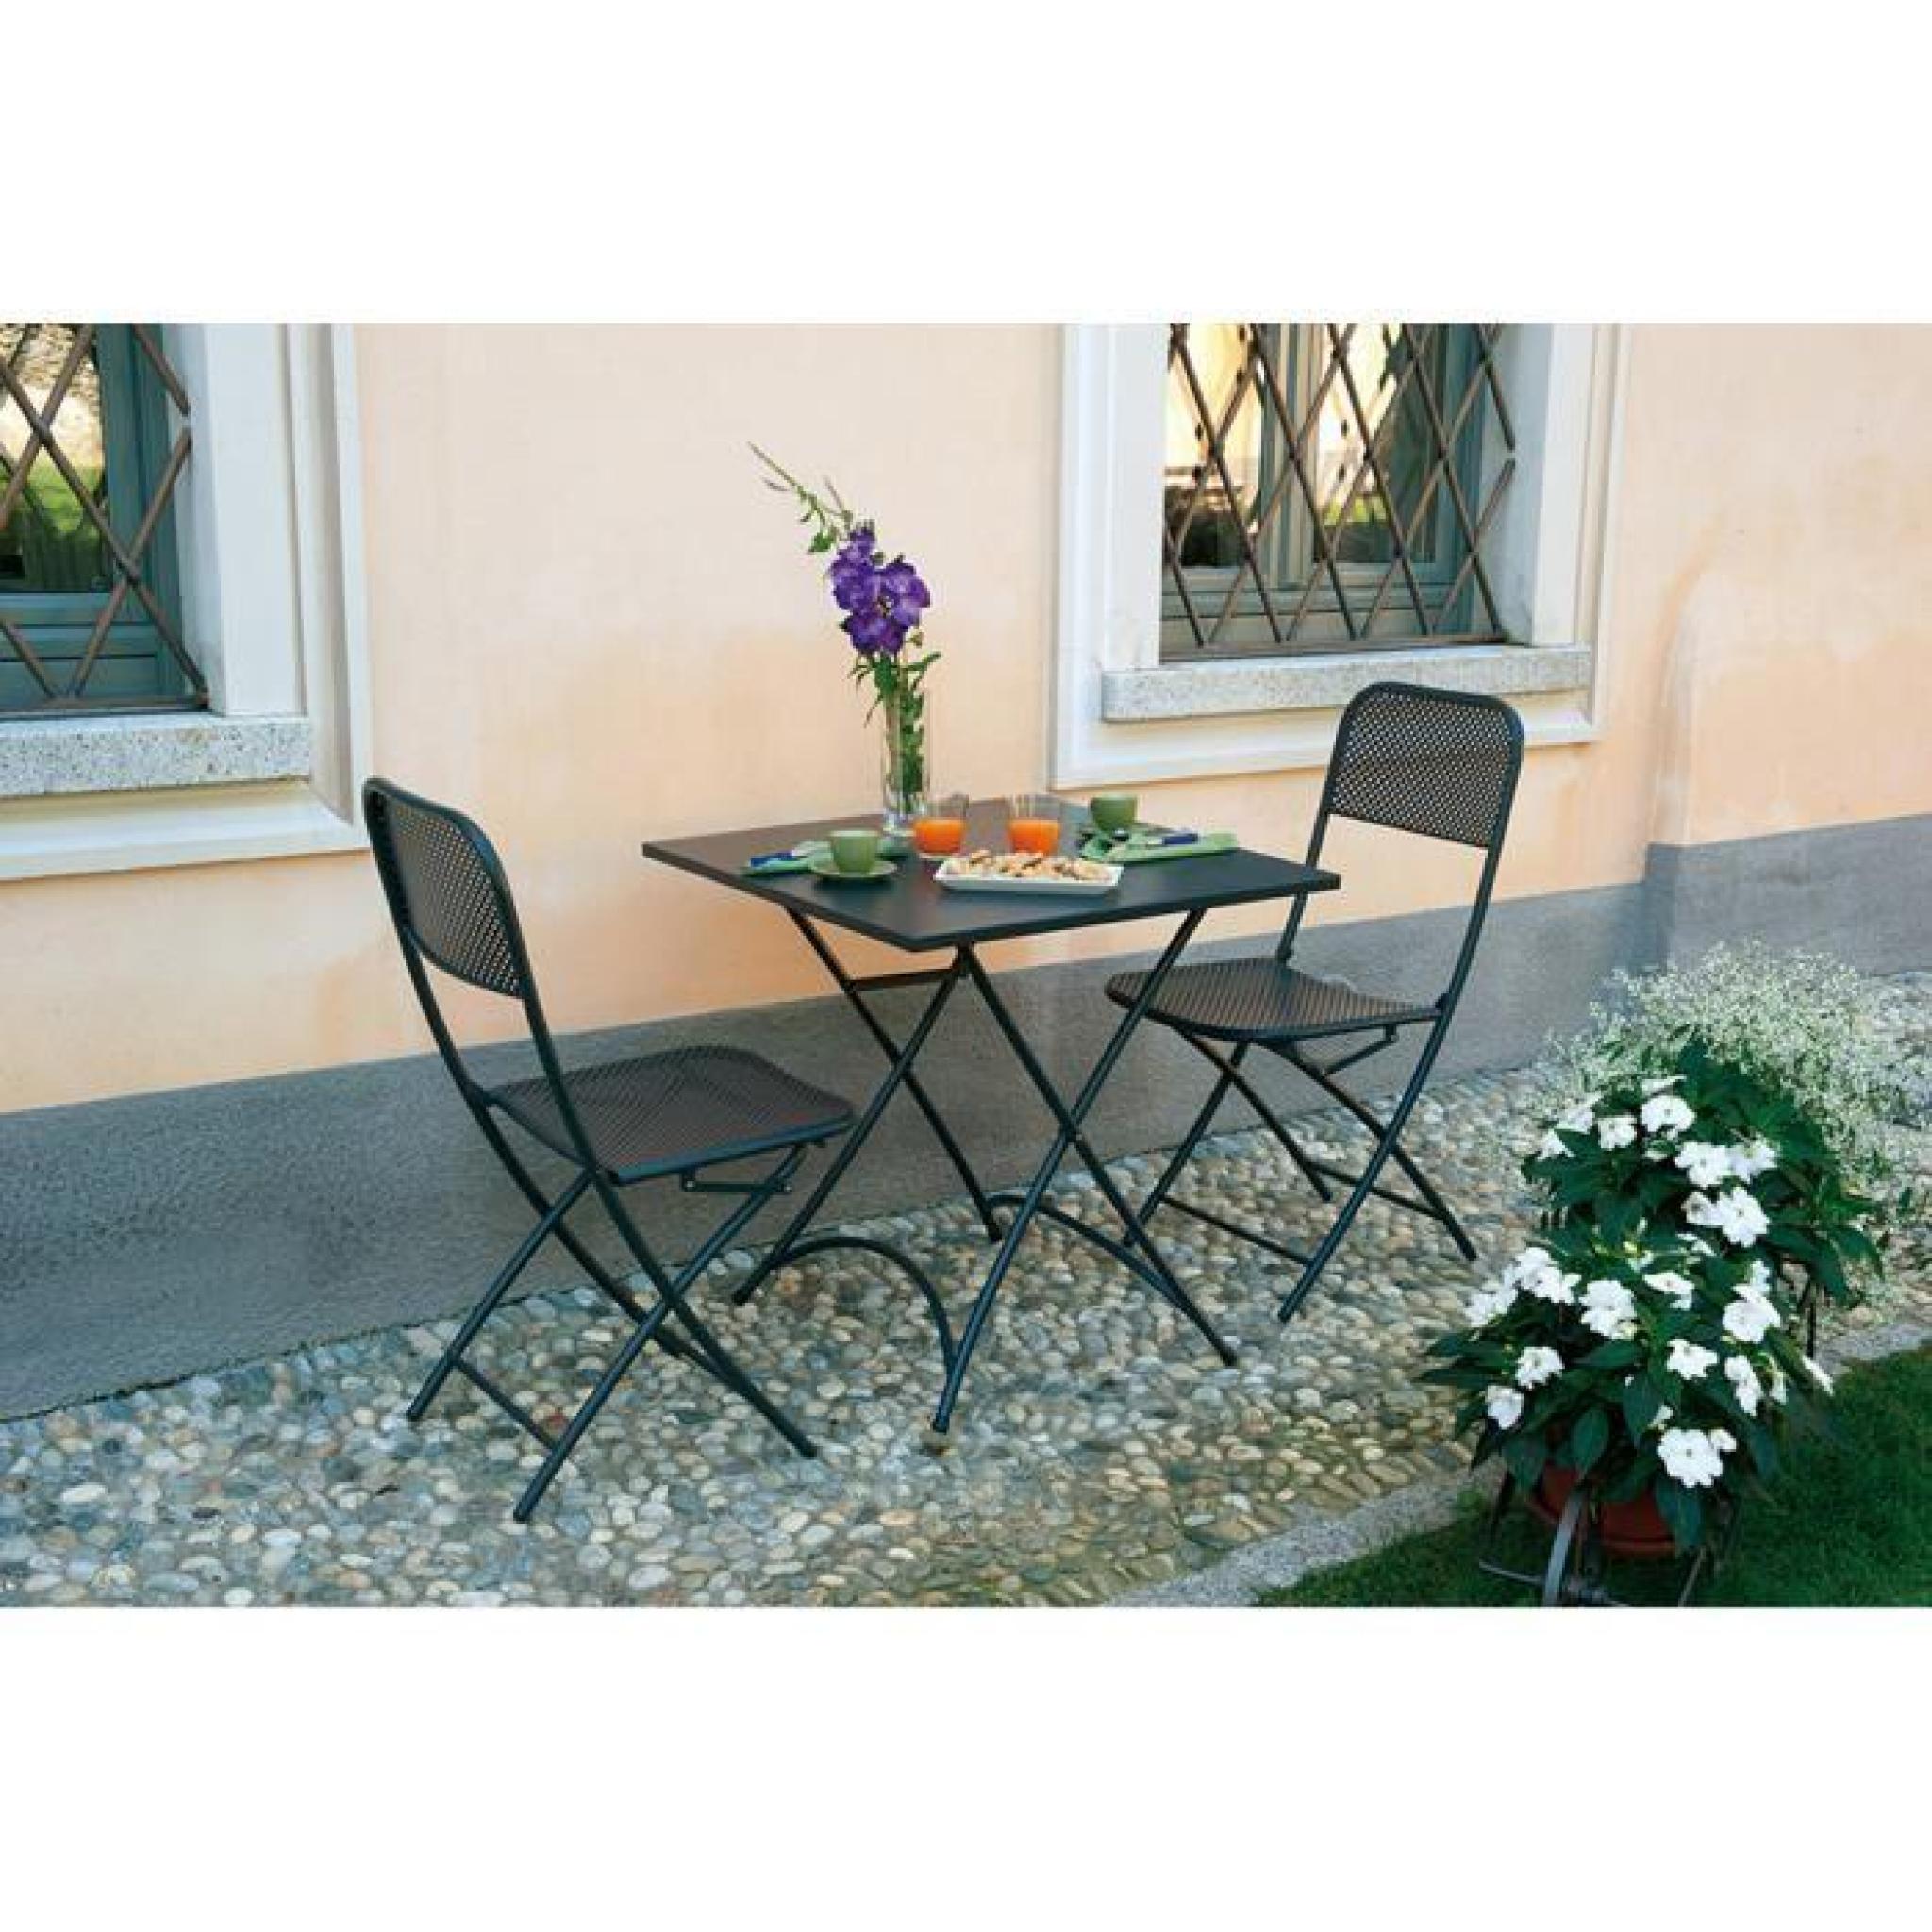 Chaise pliante de jardin en fer forgé coloris gris anthracite - Dim : H 91 x  55 x P 41 cm pas cher